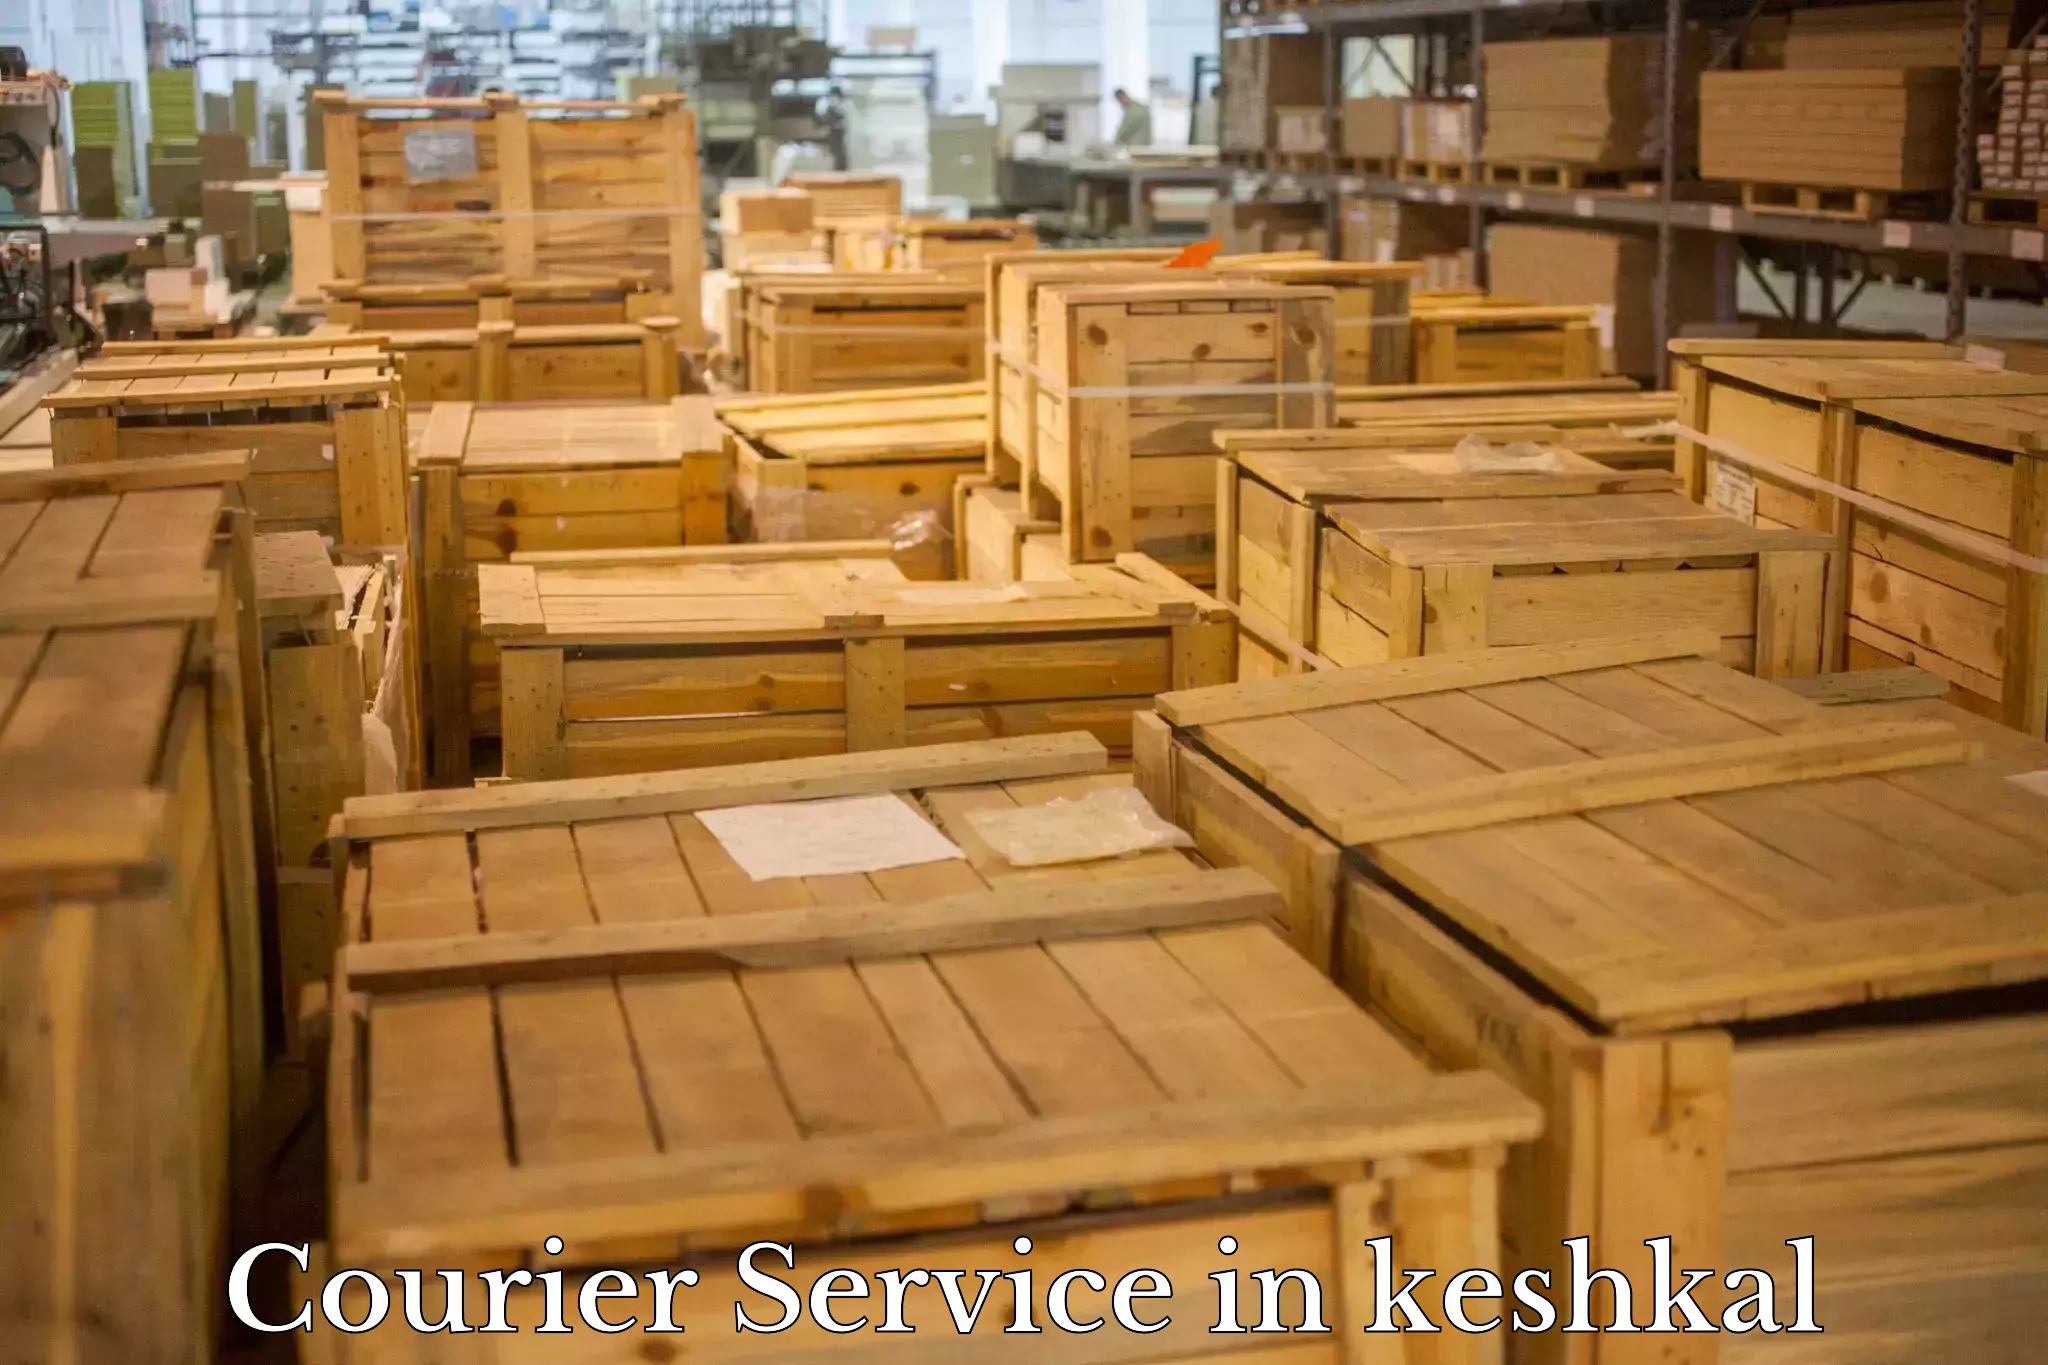 Ocean freight courier in keshkal